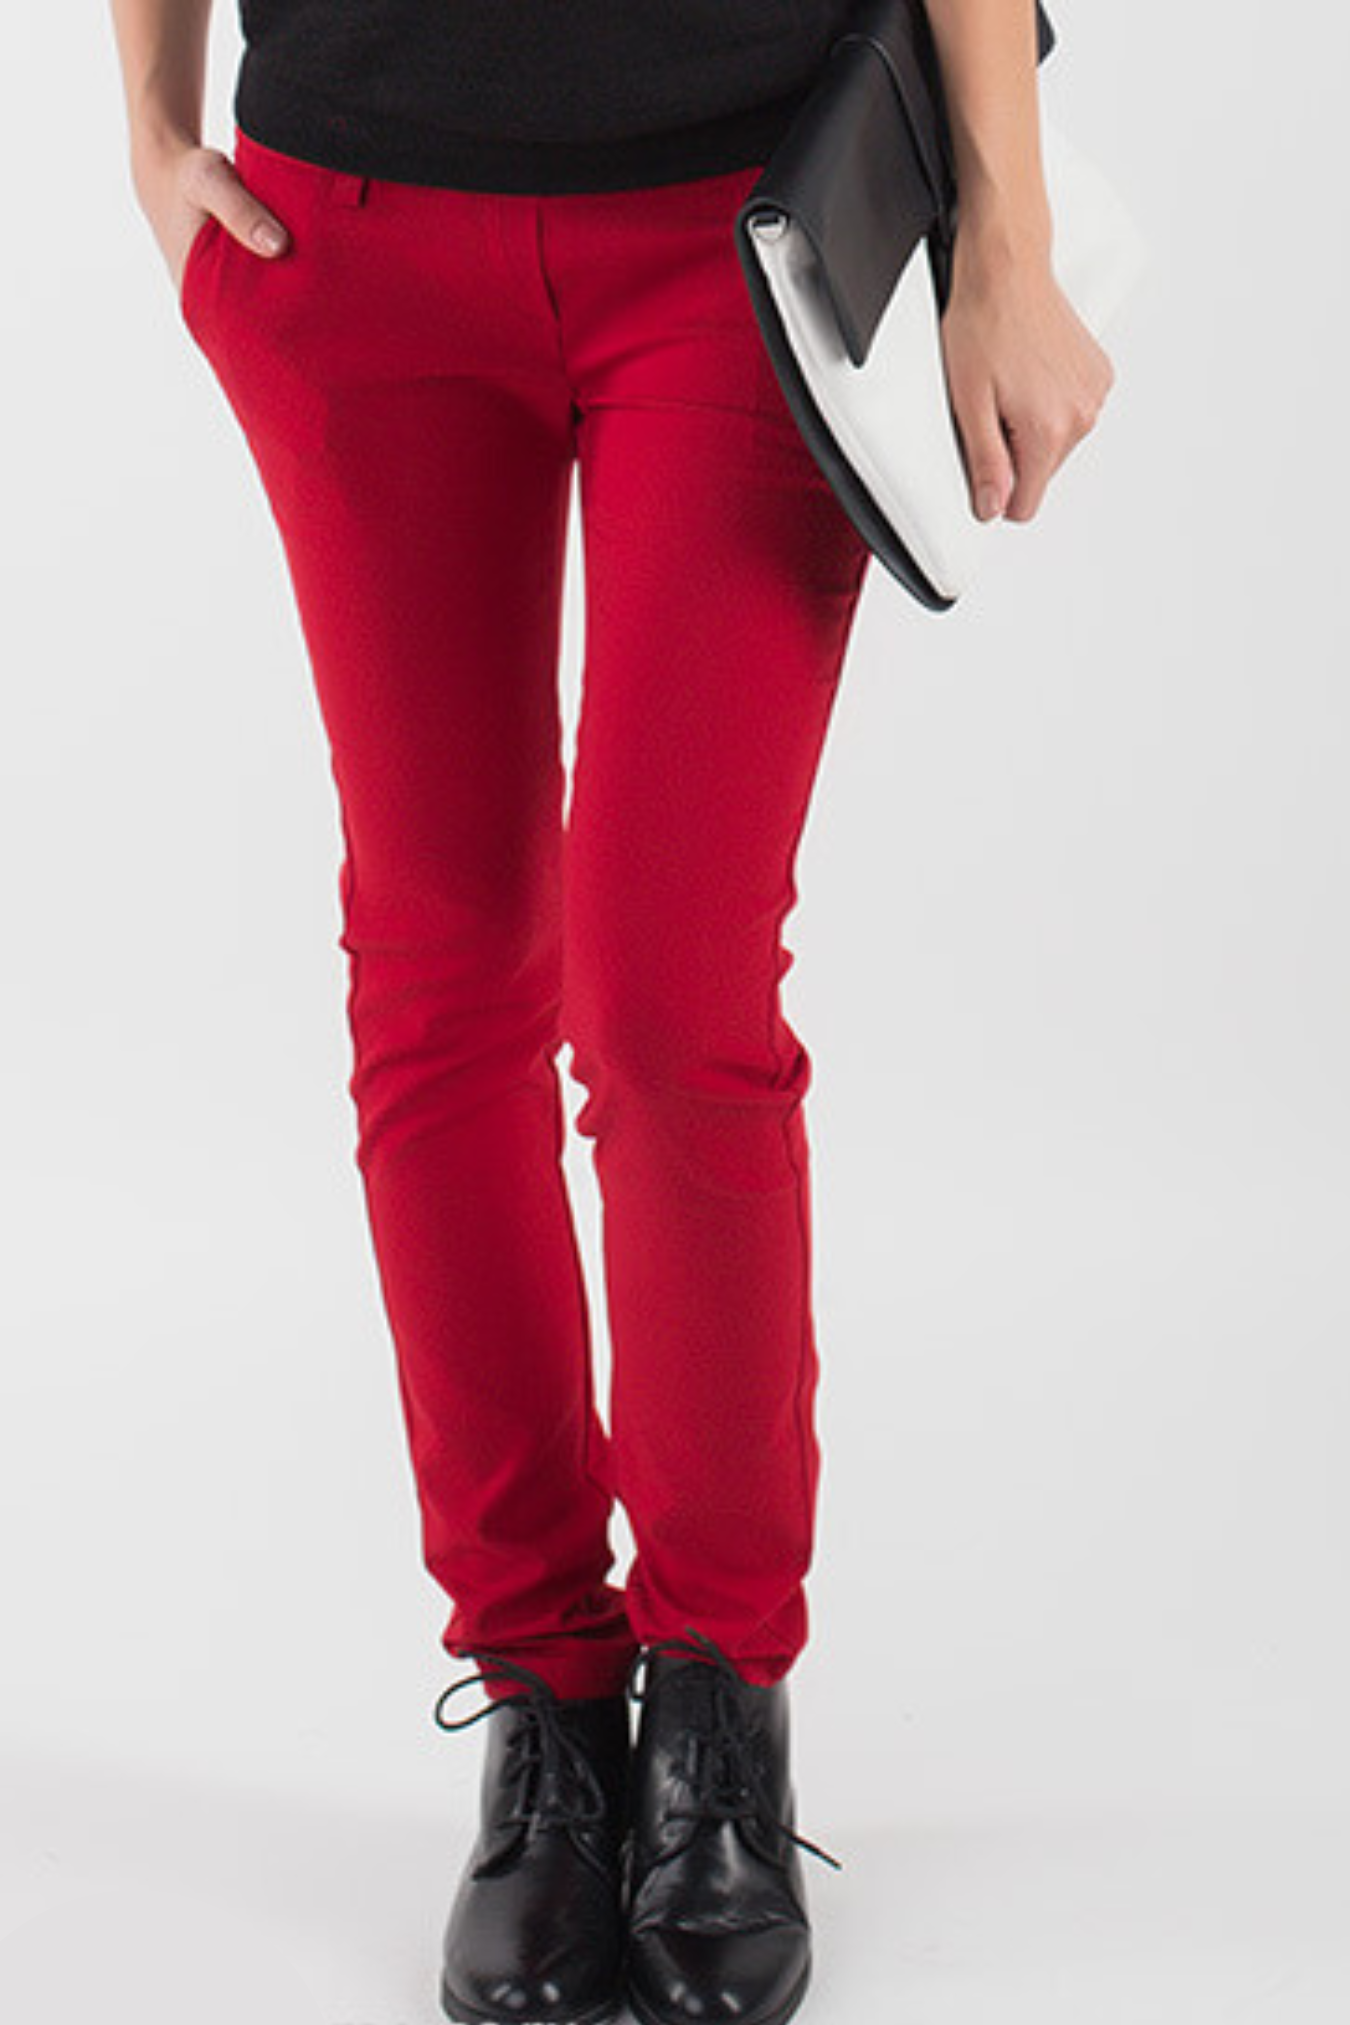 Купить красные брюки для беременных интернет магазин Happy-Moms.ru